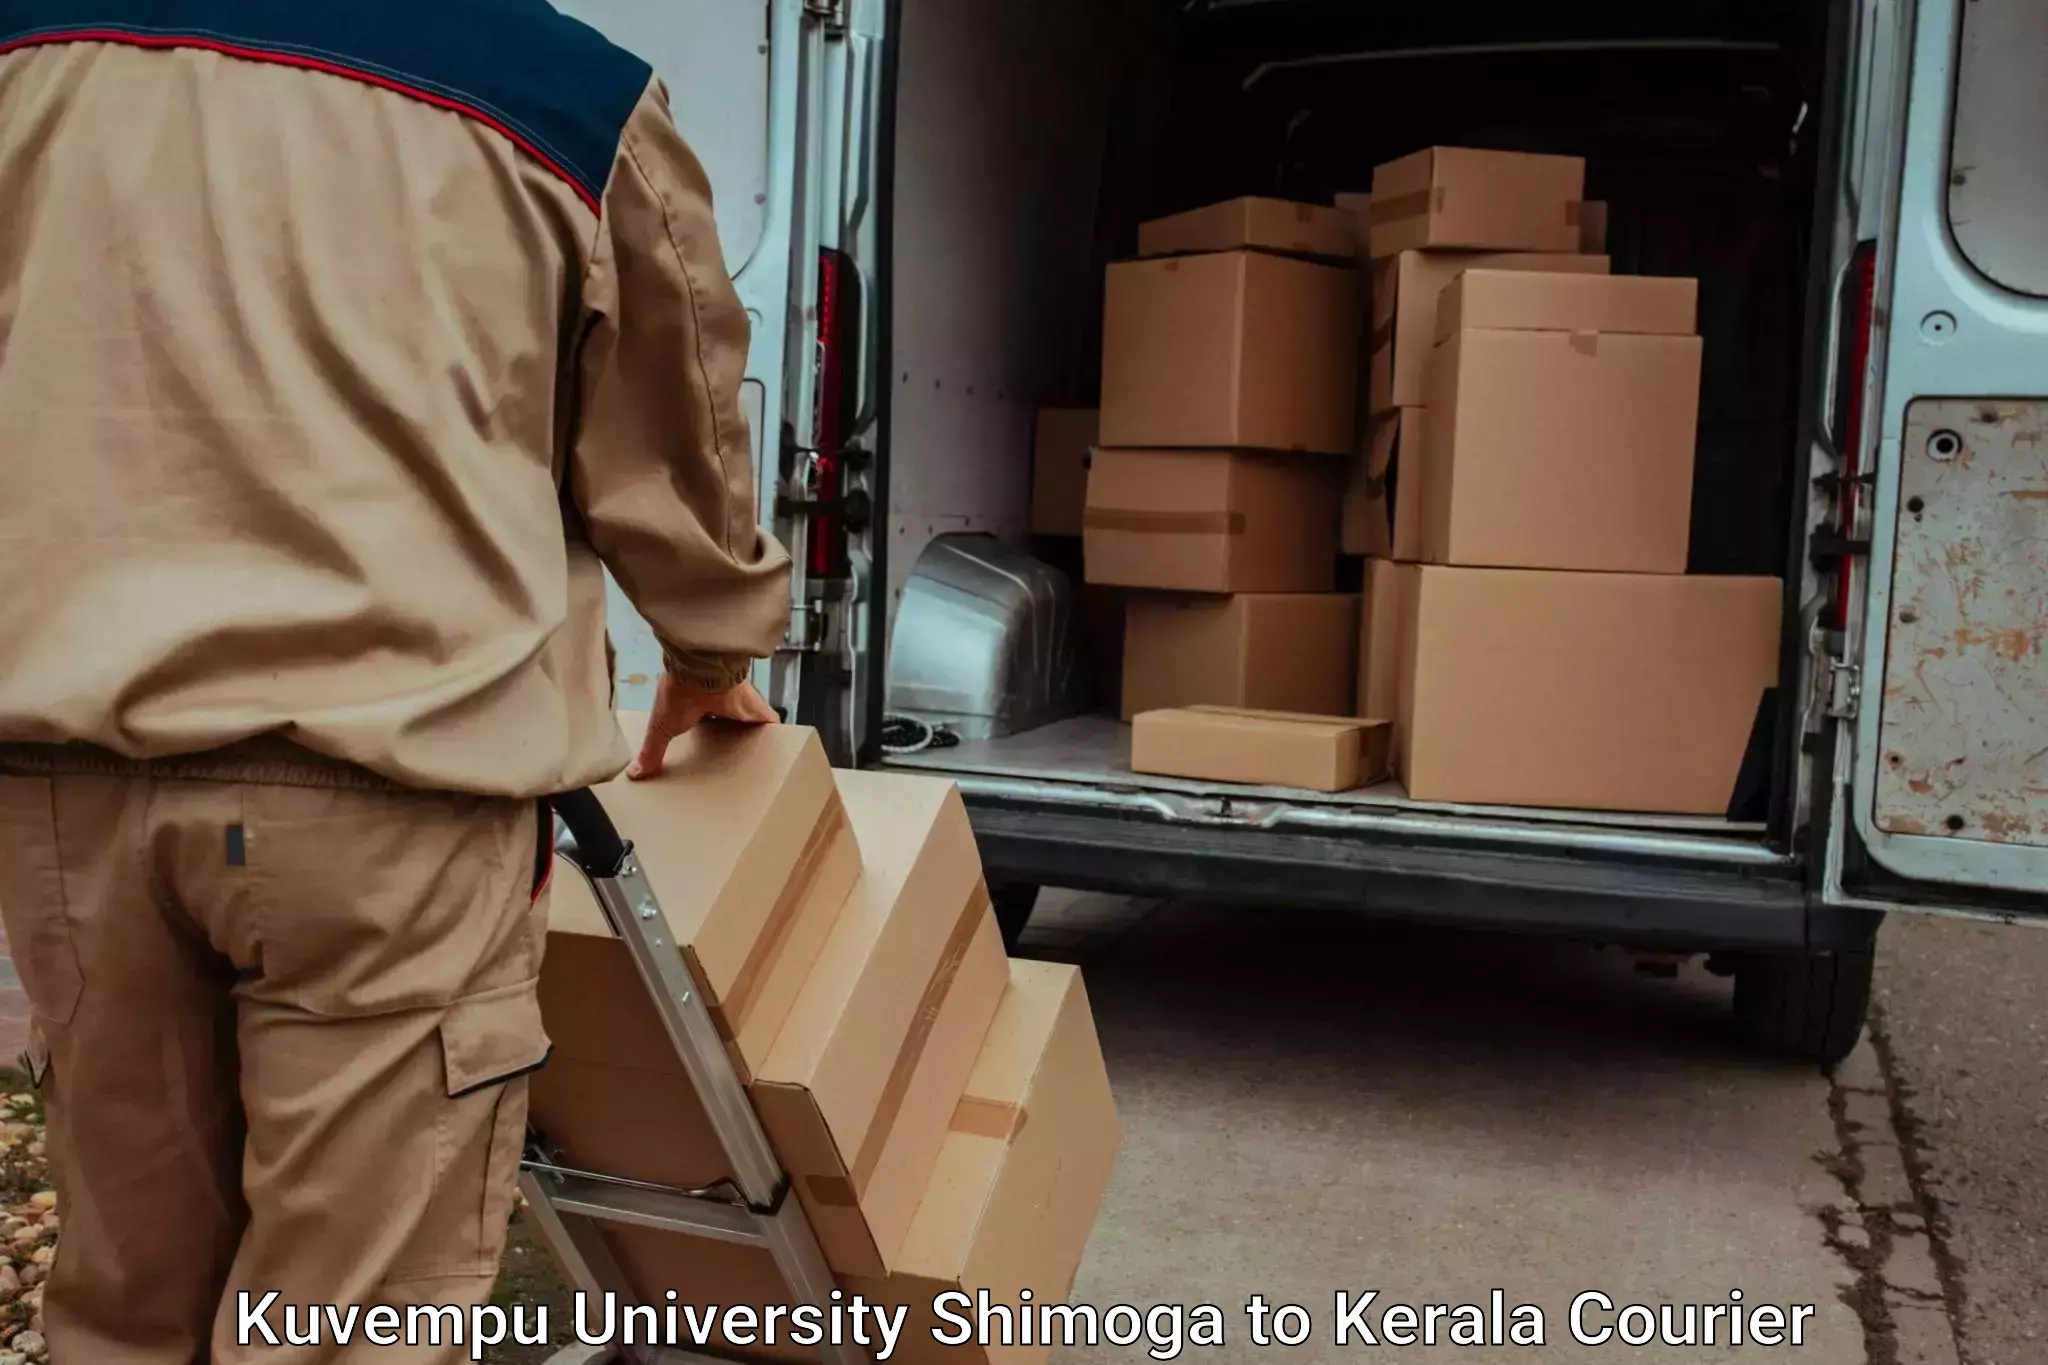 Luggage delivery operations Kuvempu University Shimoga to IIIT Kottayam